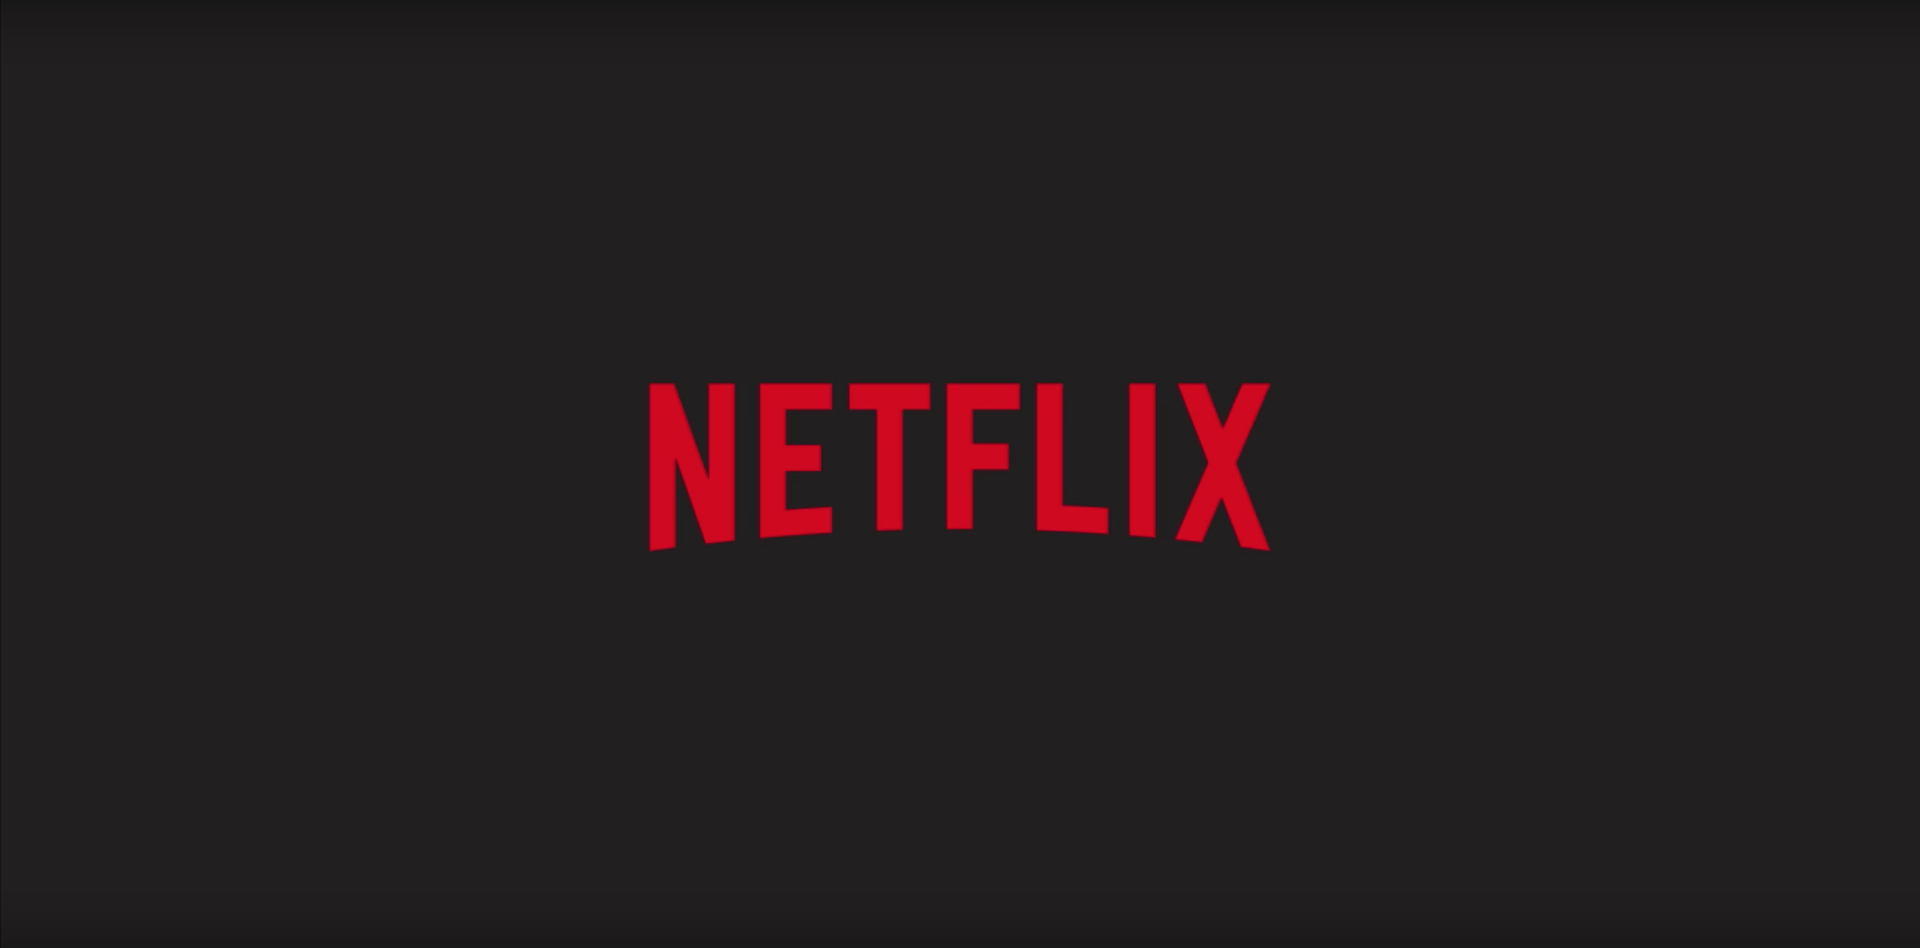 Ações da Netflix aumentam após vitórias no Globo de Ouro